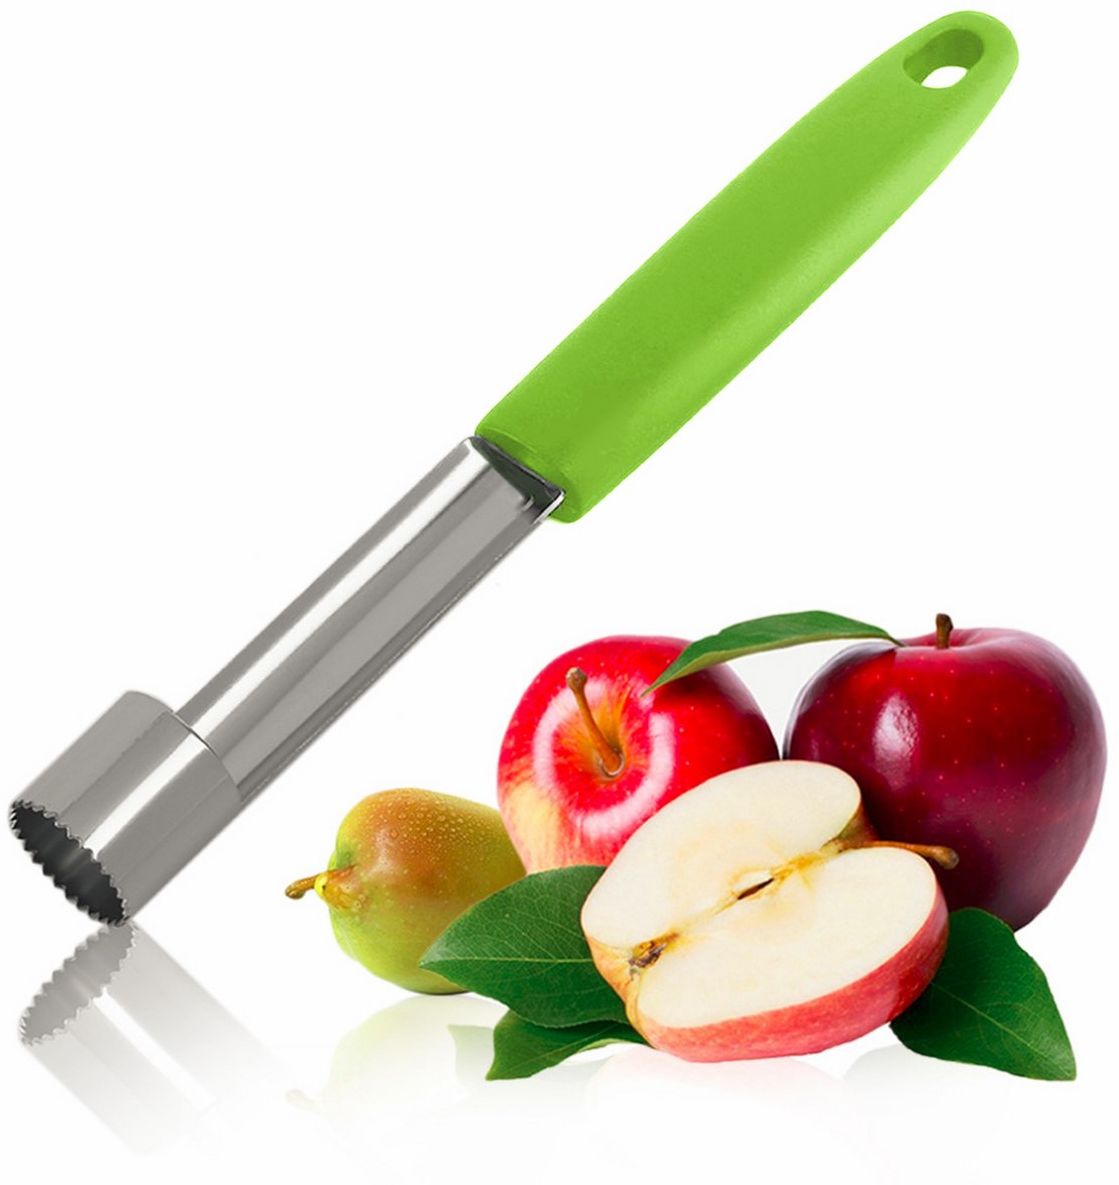 фото Нож для удаления сердцевины Ругес "Семечко", цвет: светло-зеленый, серый металлик Ruges